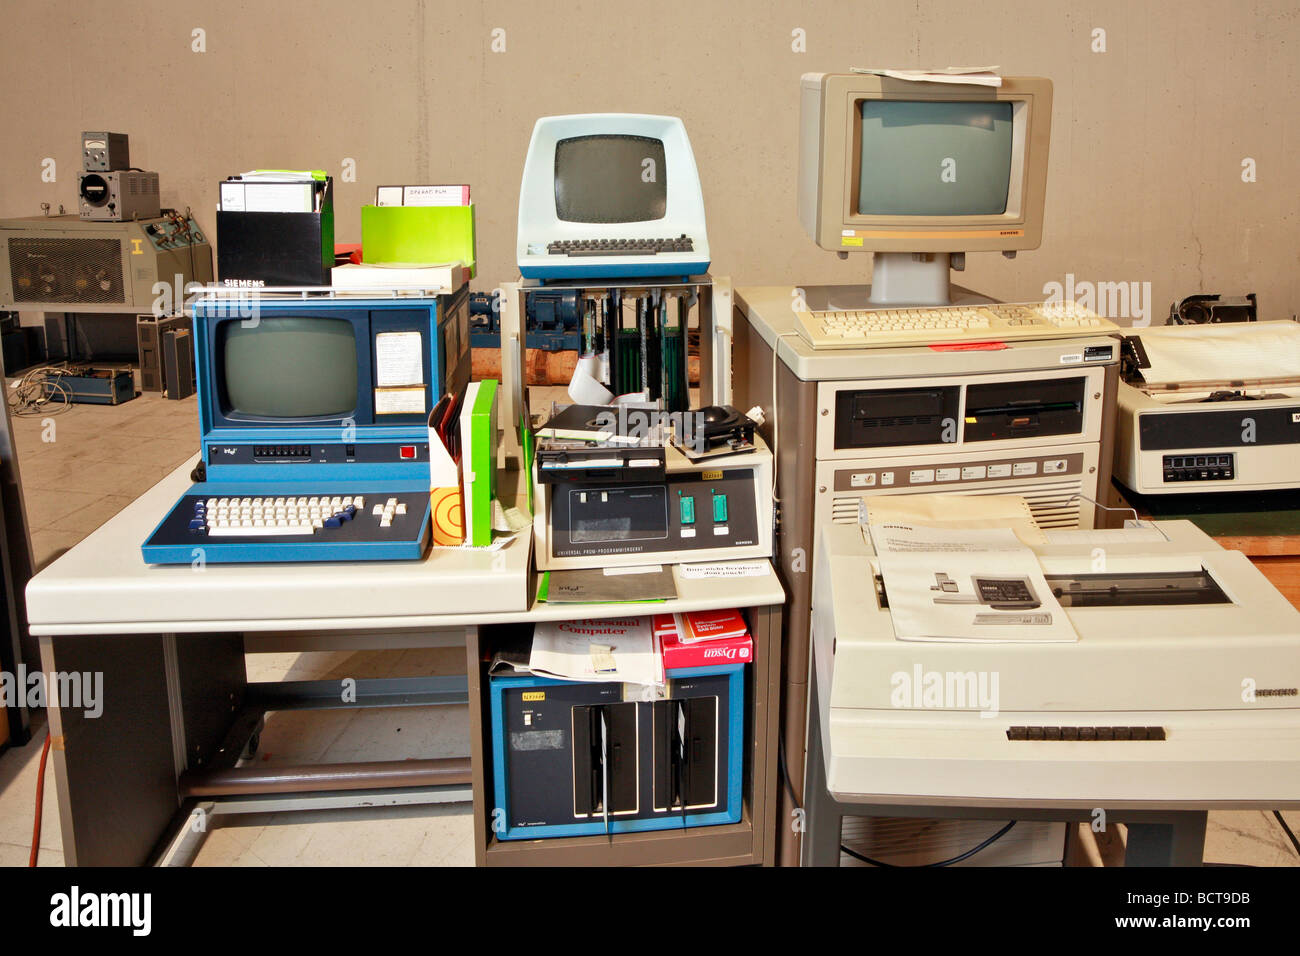 Equipos históricos, programación workstation en la izquierda, control remoto-equipo de la derecha, Radom, Museo de Tecnología, el rais Foto de stock